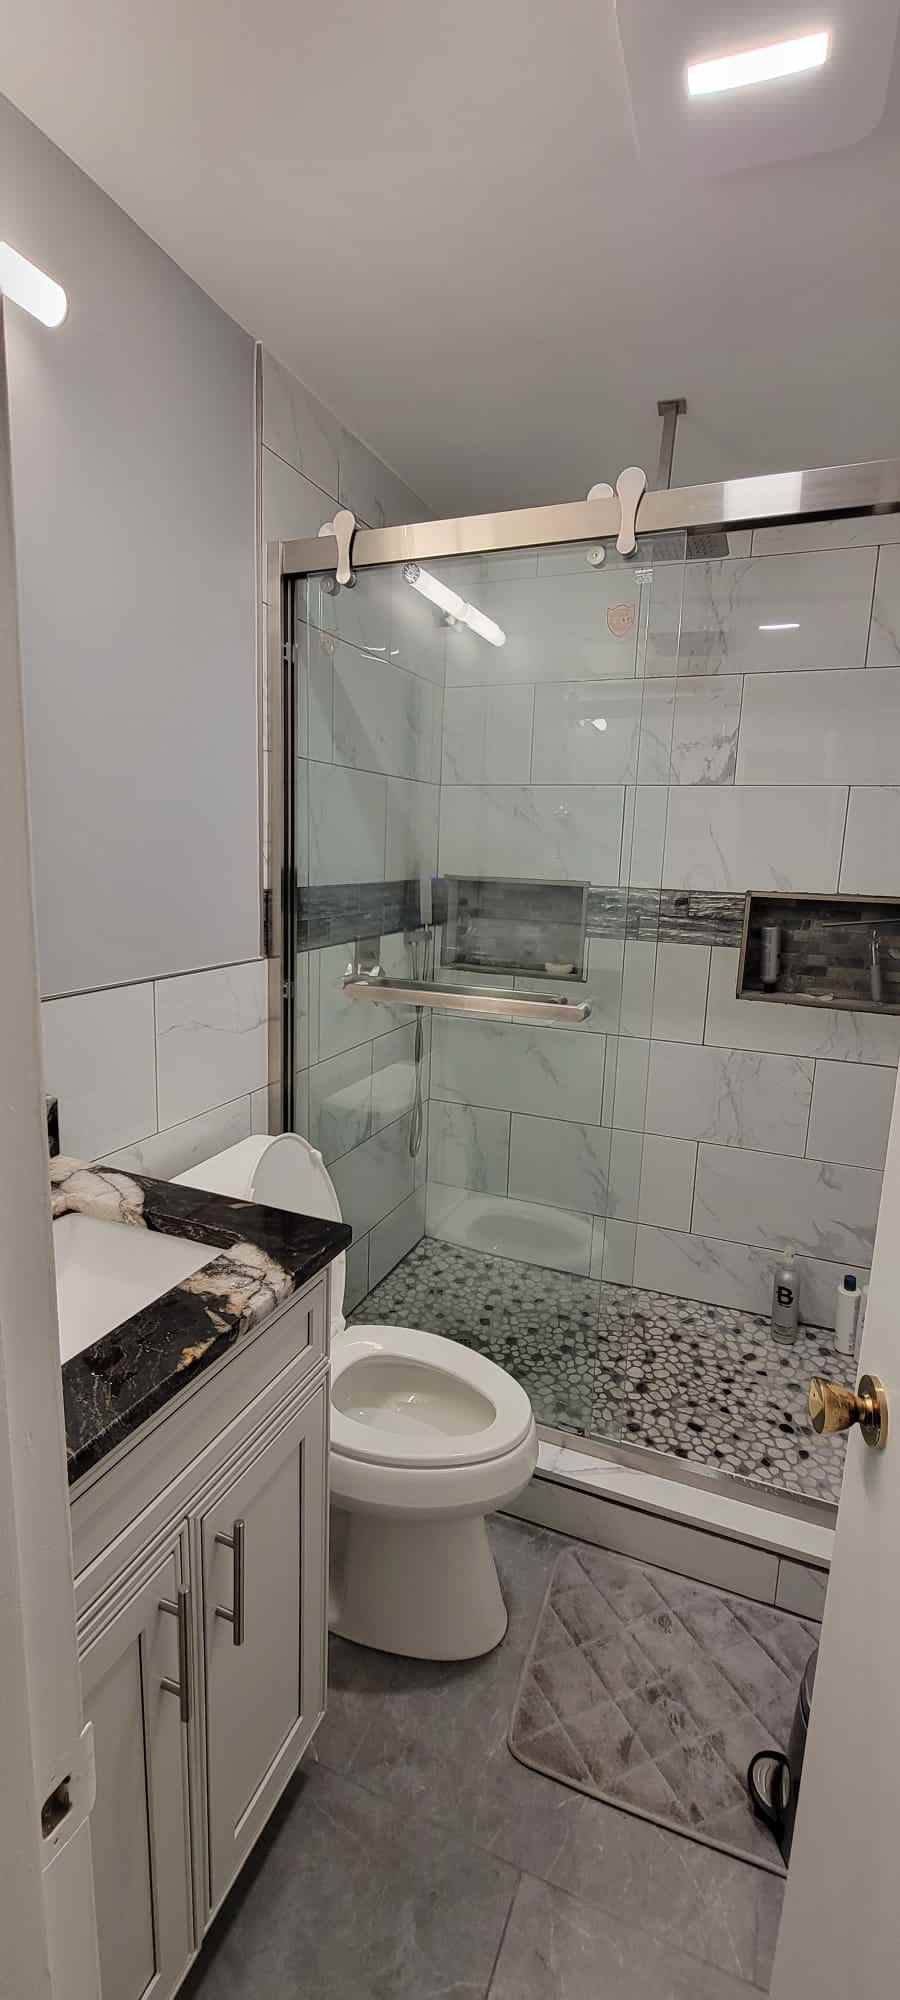 Home Remodel | Kitchen & Bathroom Remodel